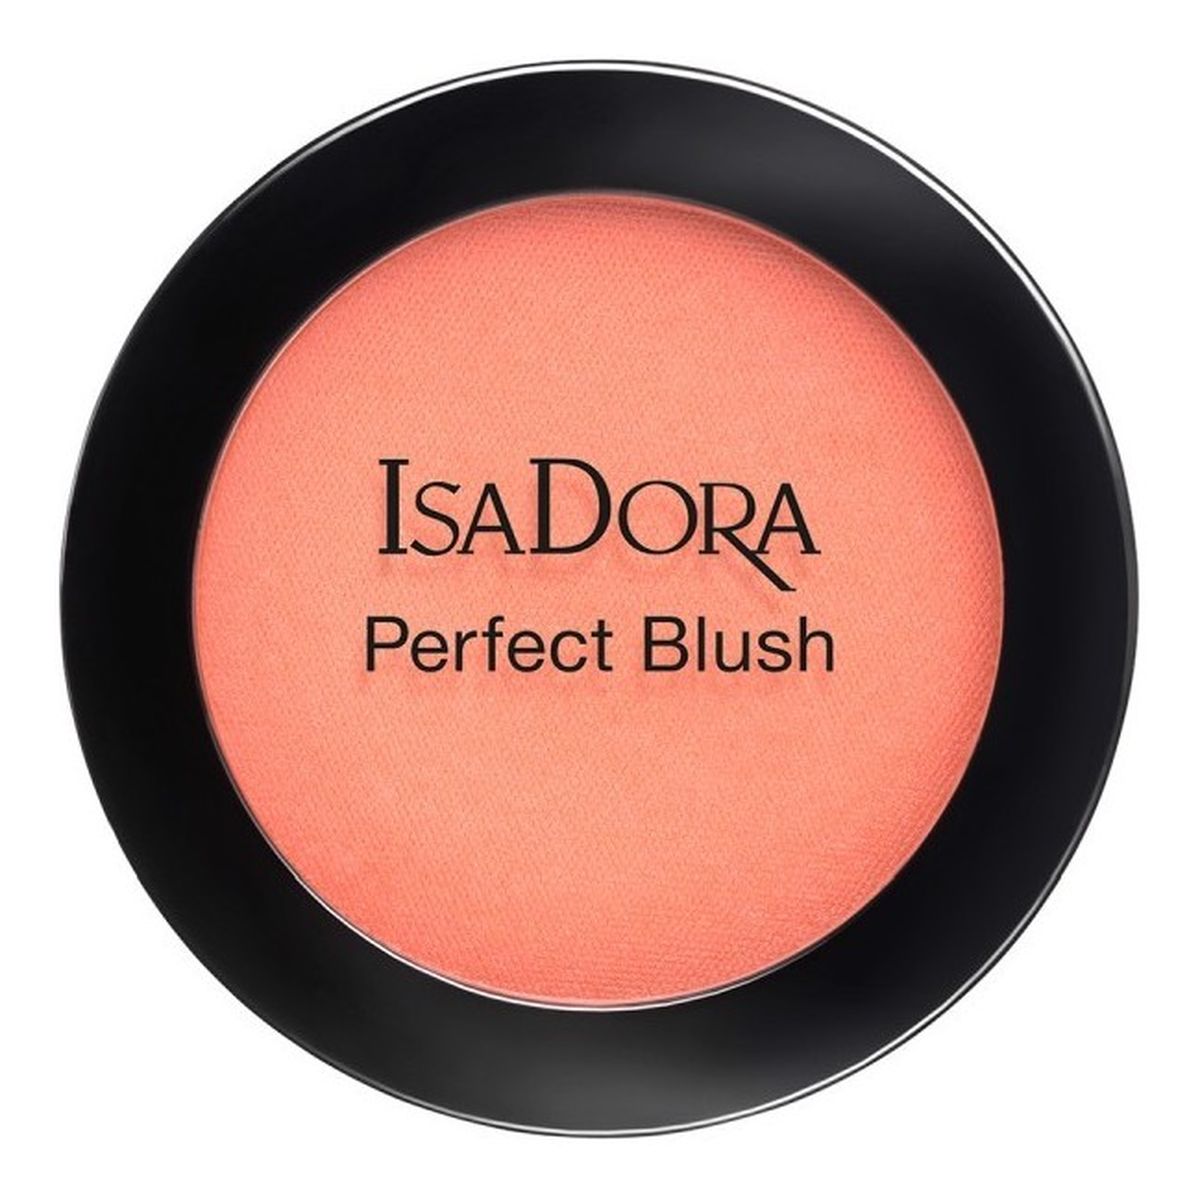 Isadora Perfect Blush pudrowy róż do policzków 4g